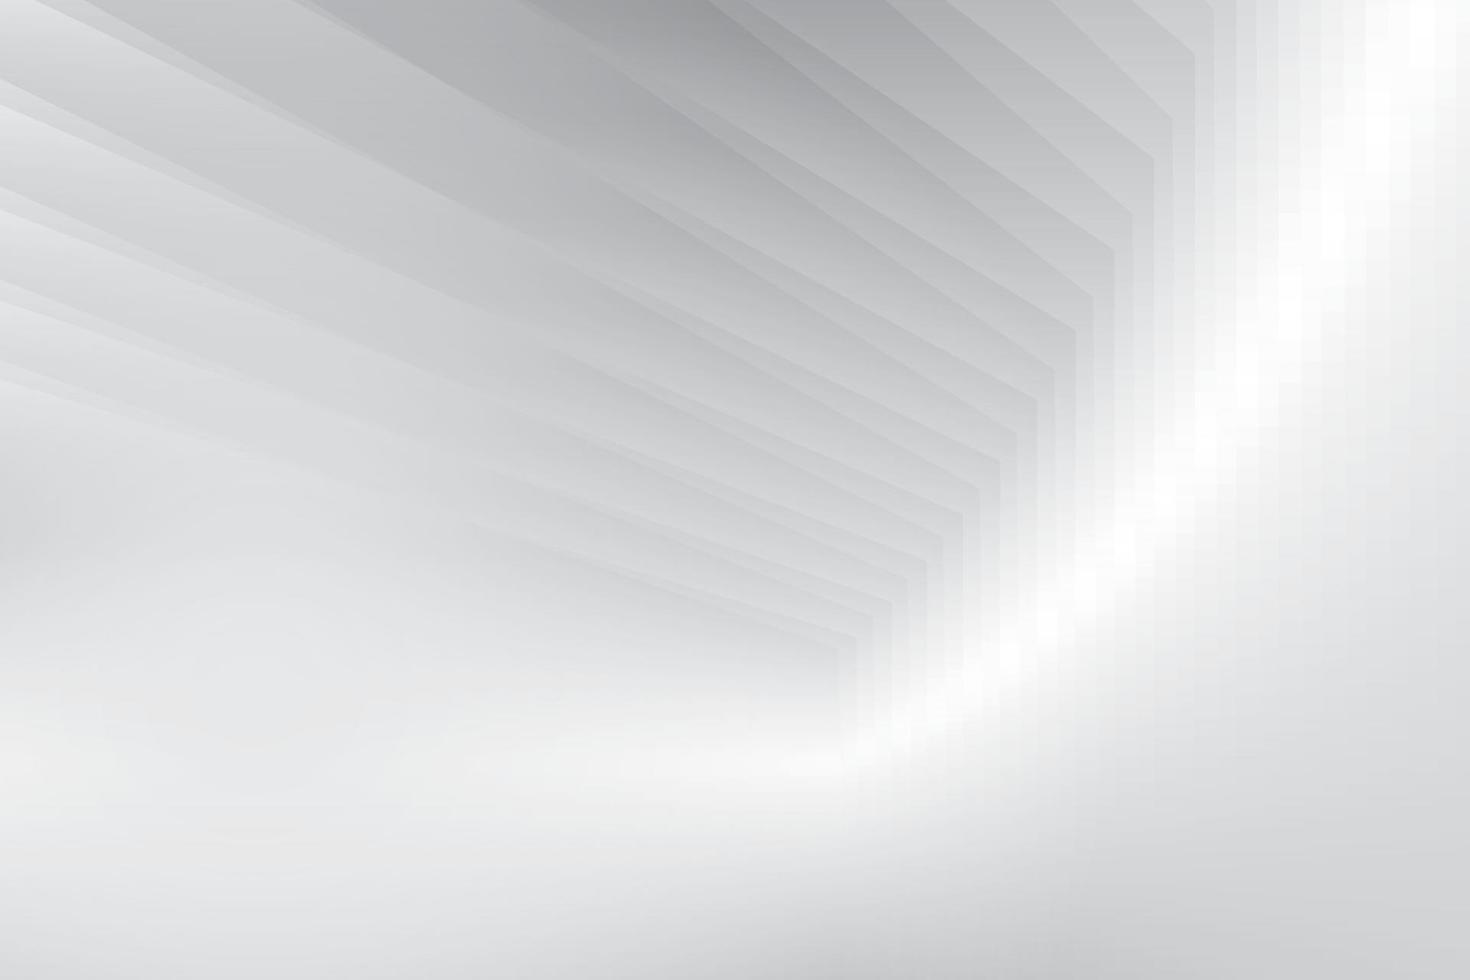 sfondo geometrico astratto di colore bianco e grigio. illustrazione vettoriale. vettore